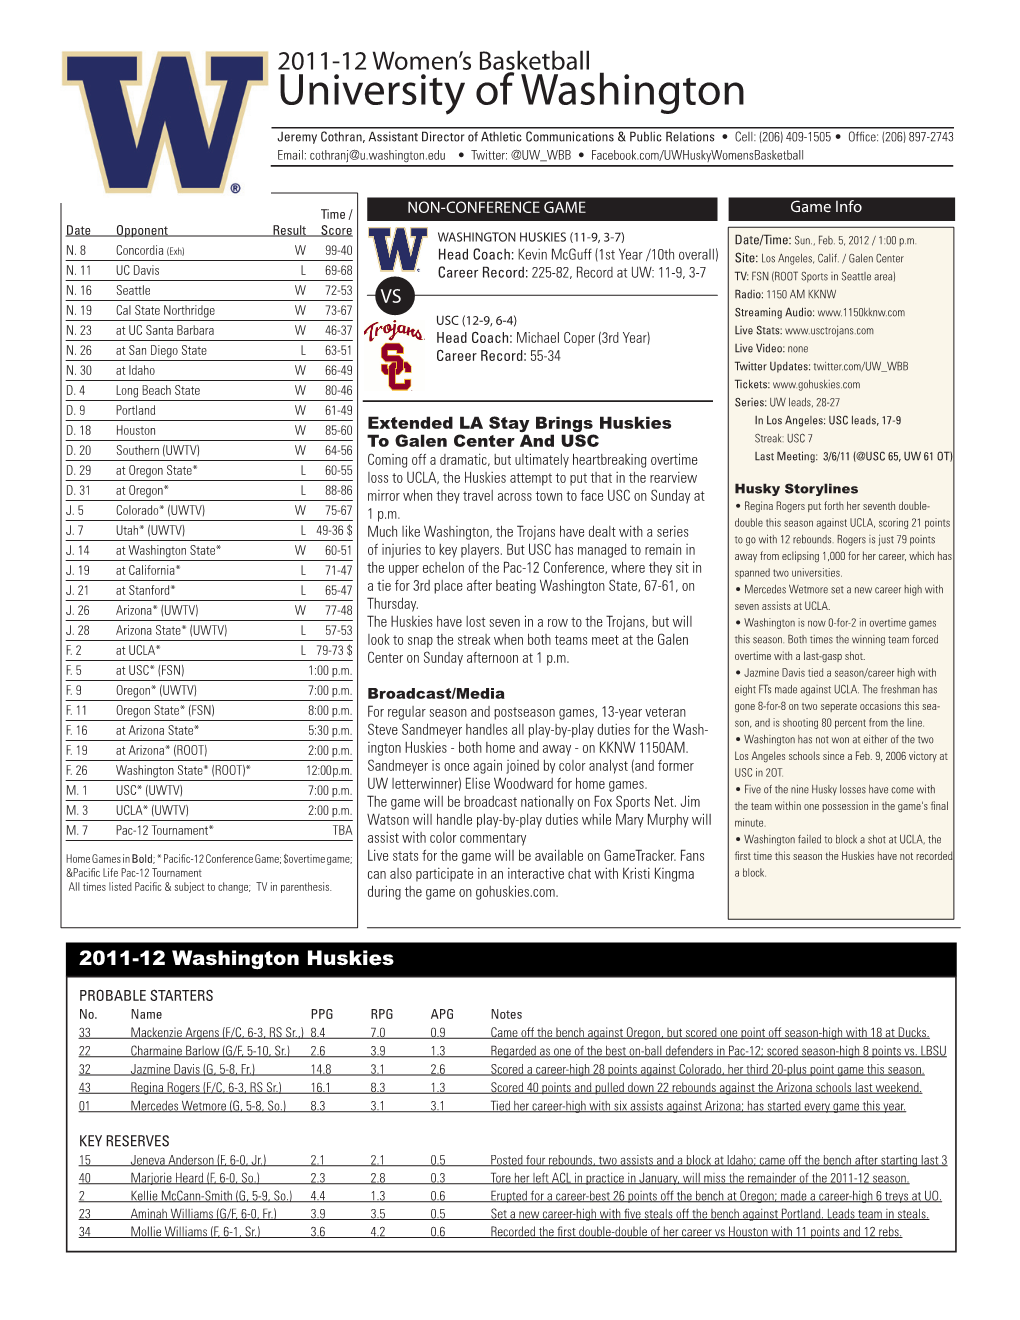 University of Washington Athletics